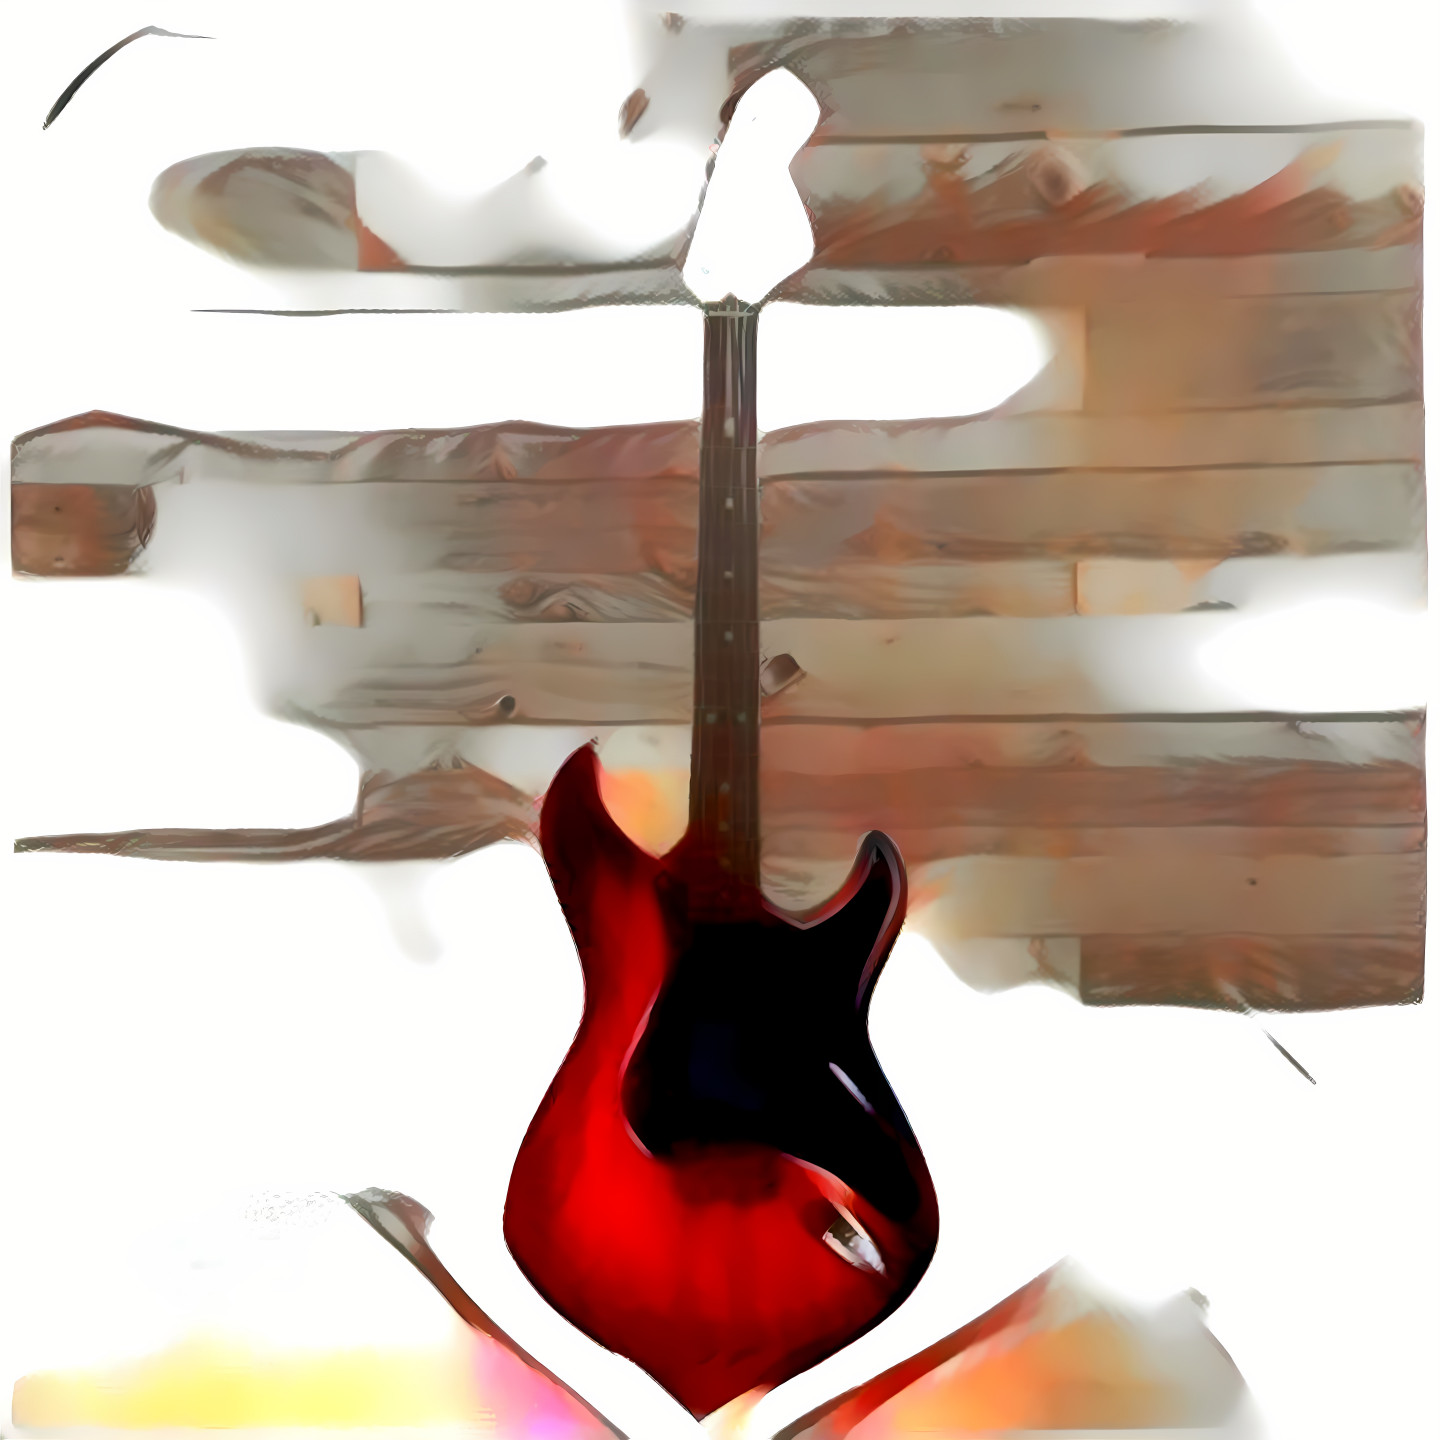 Li'l Red Guitar [01]